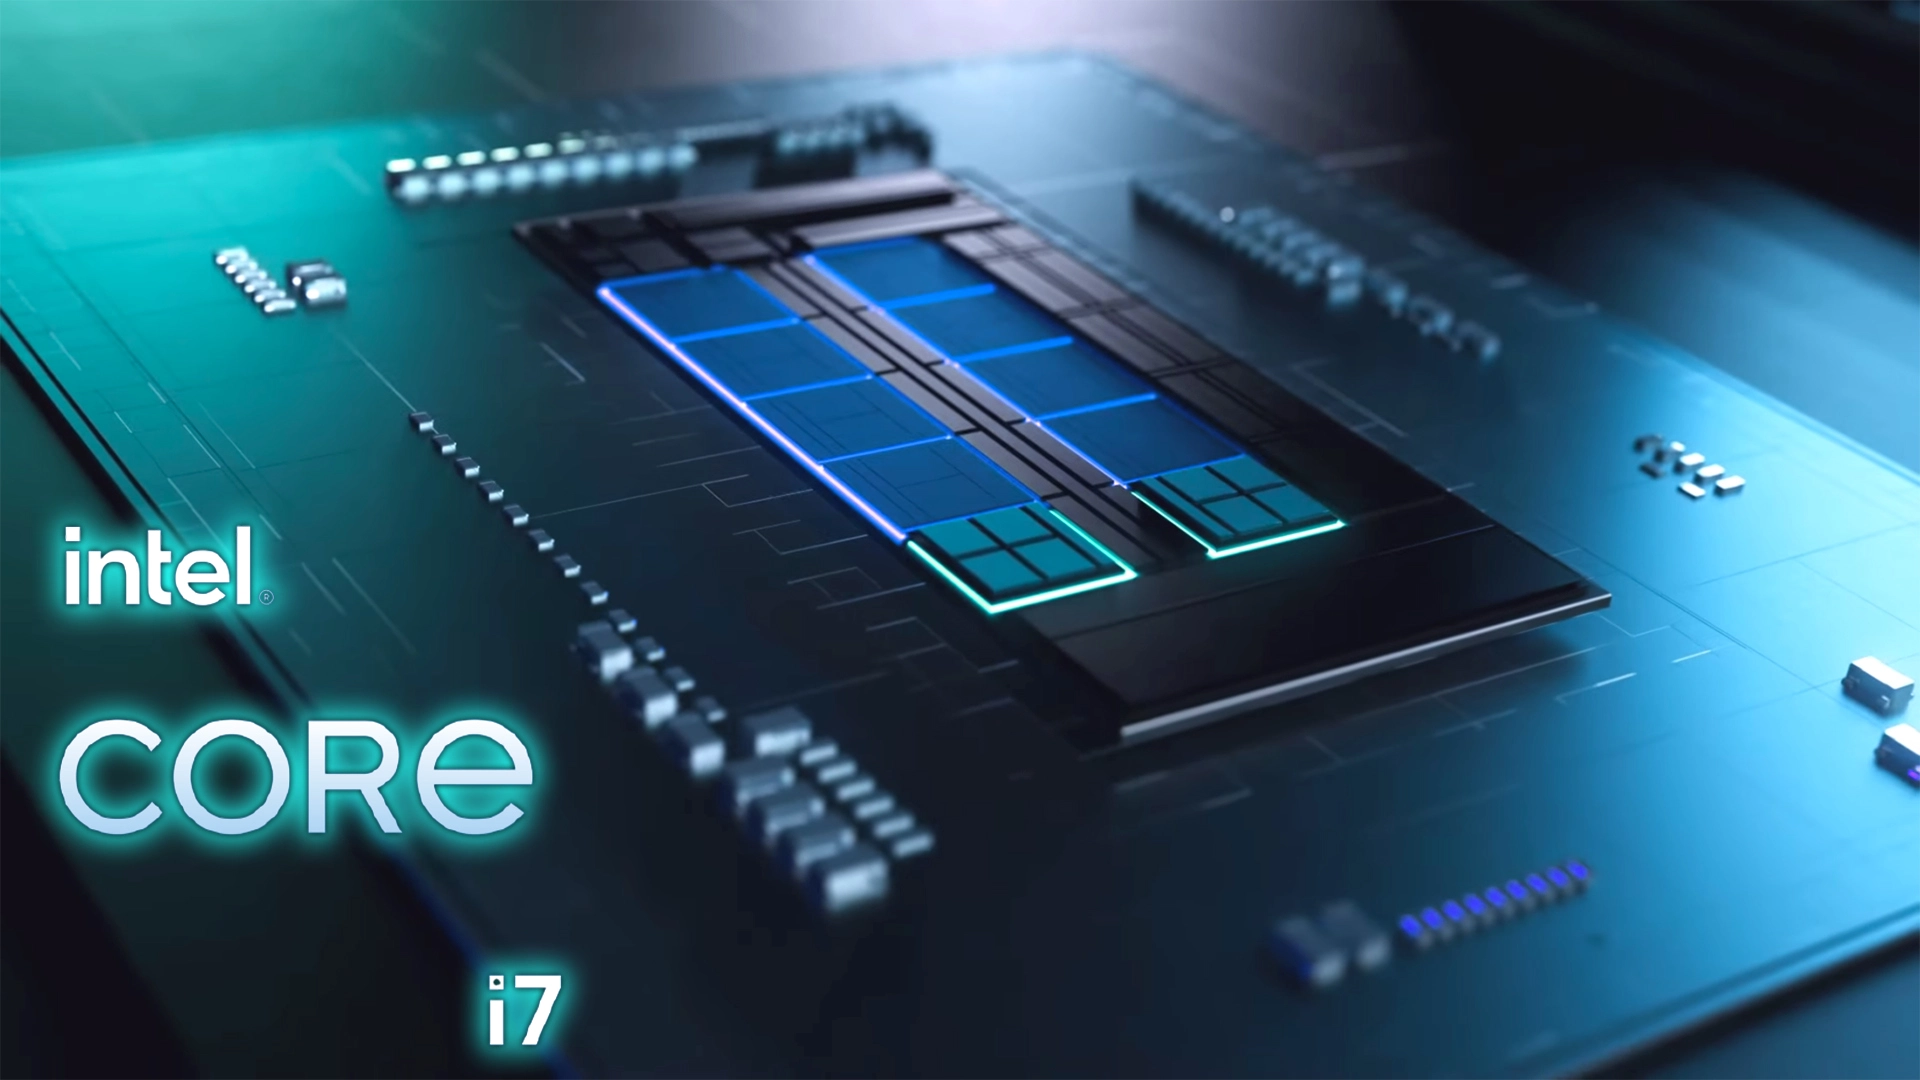 O novo Intel Core i7-12700H, modelo de notebook, apresentou desempenho superior ao AMD Ryzen 9 5900HX, também de notebook!